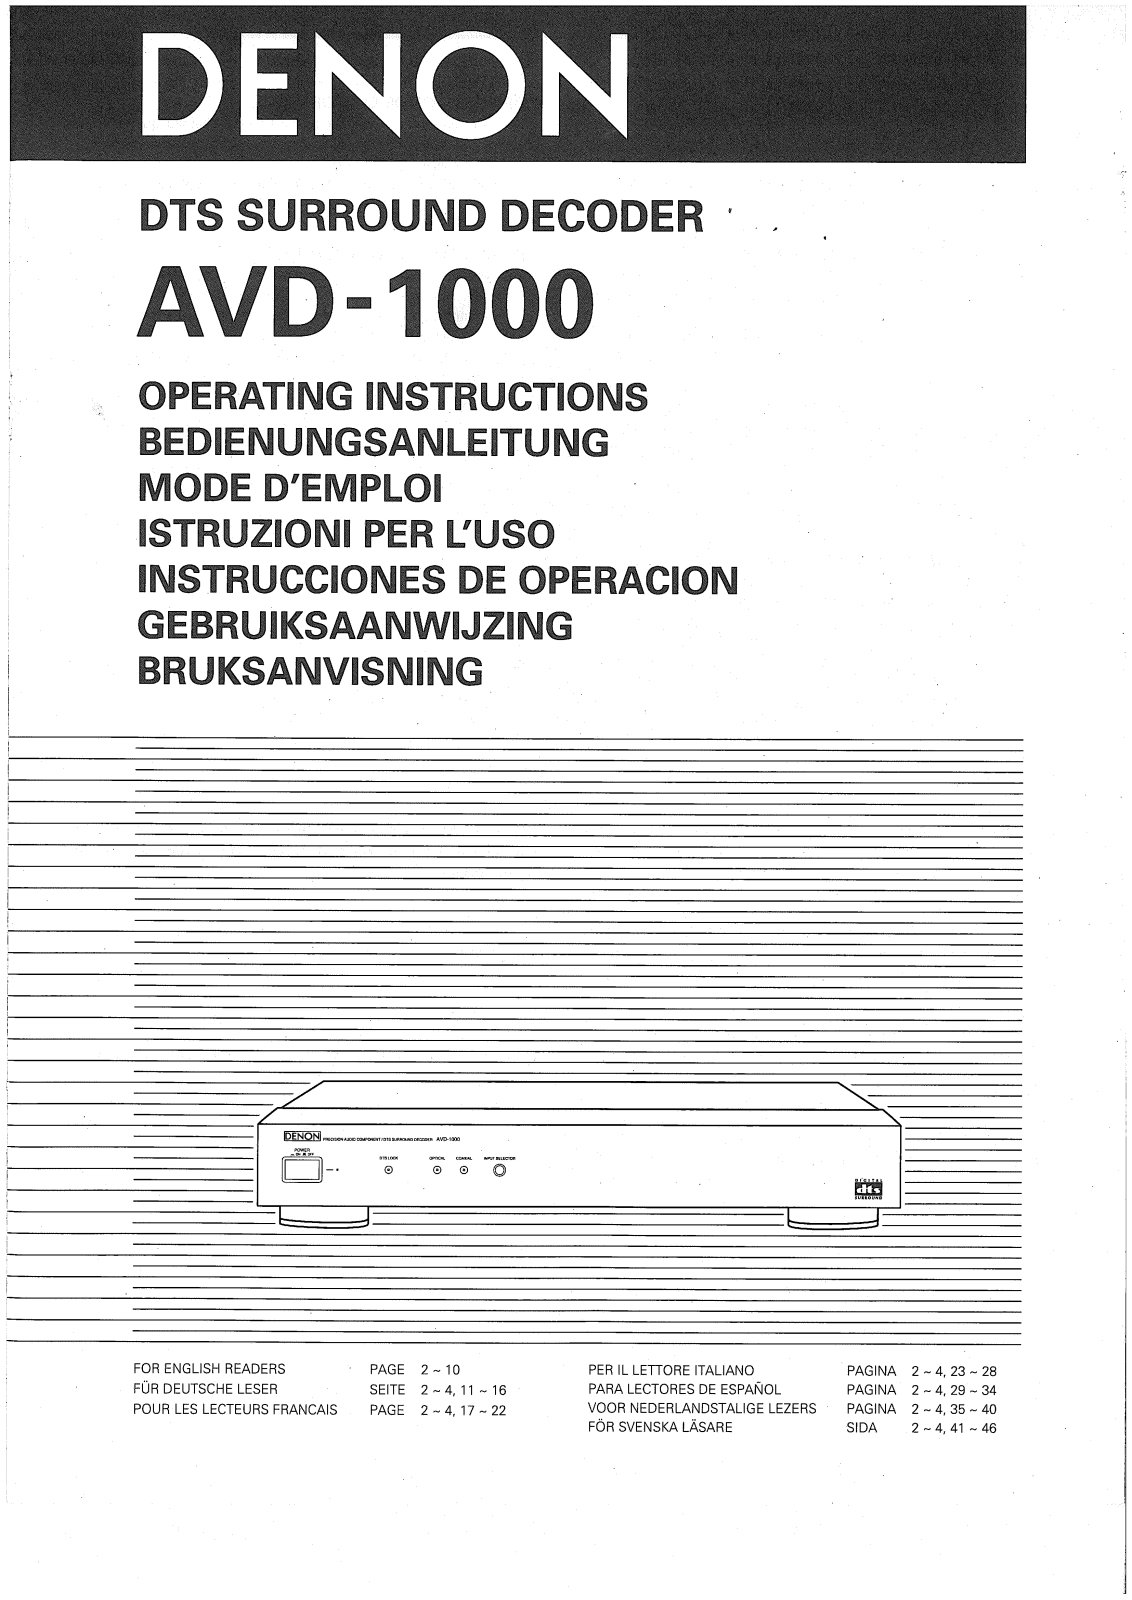 Denon AVD-1000 Operating Instructions